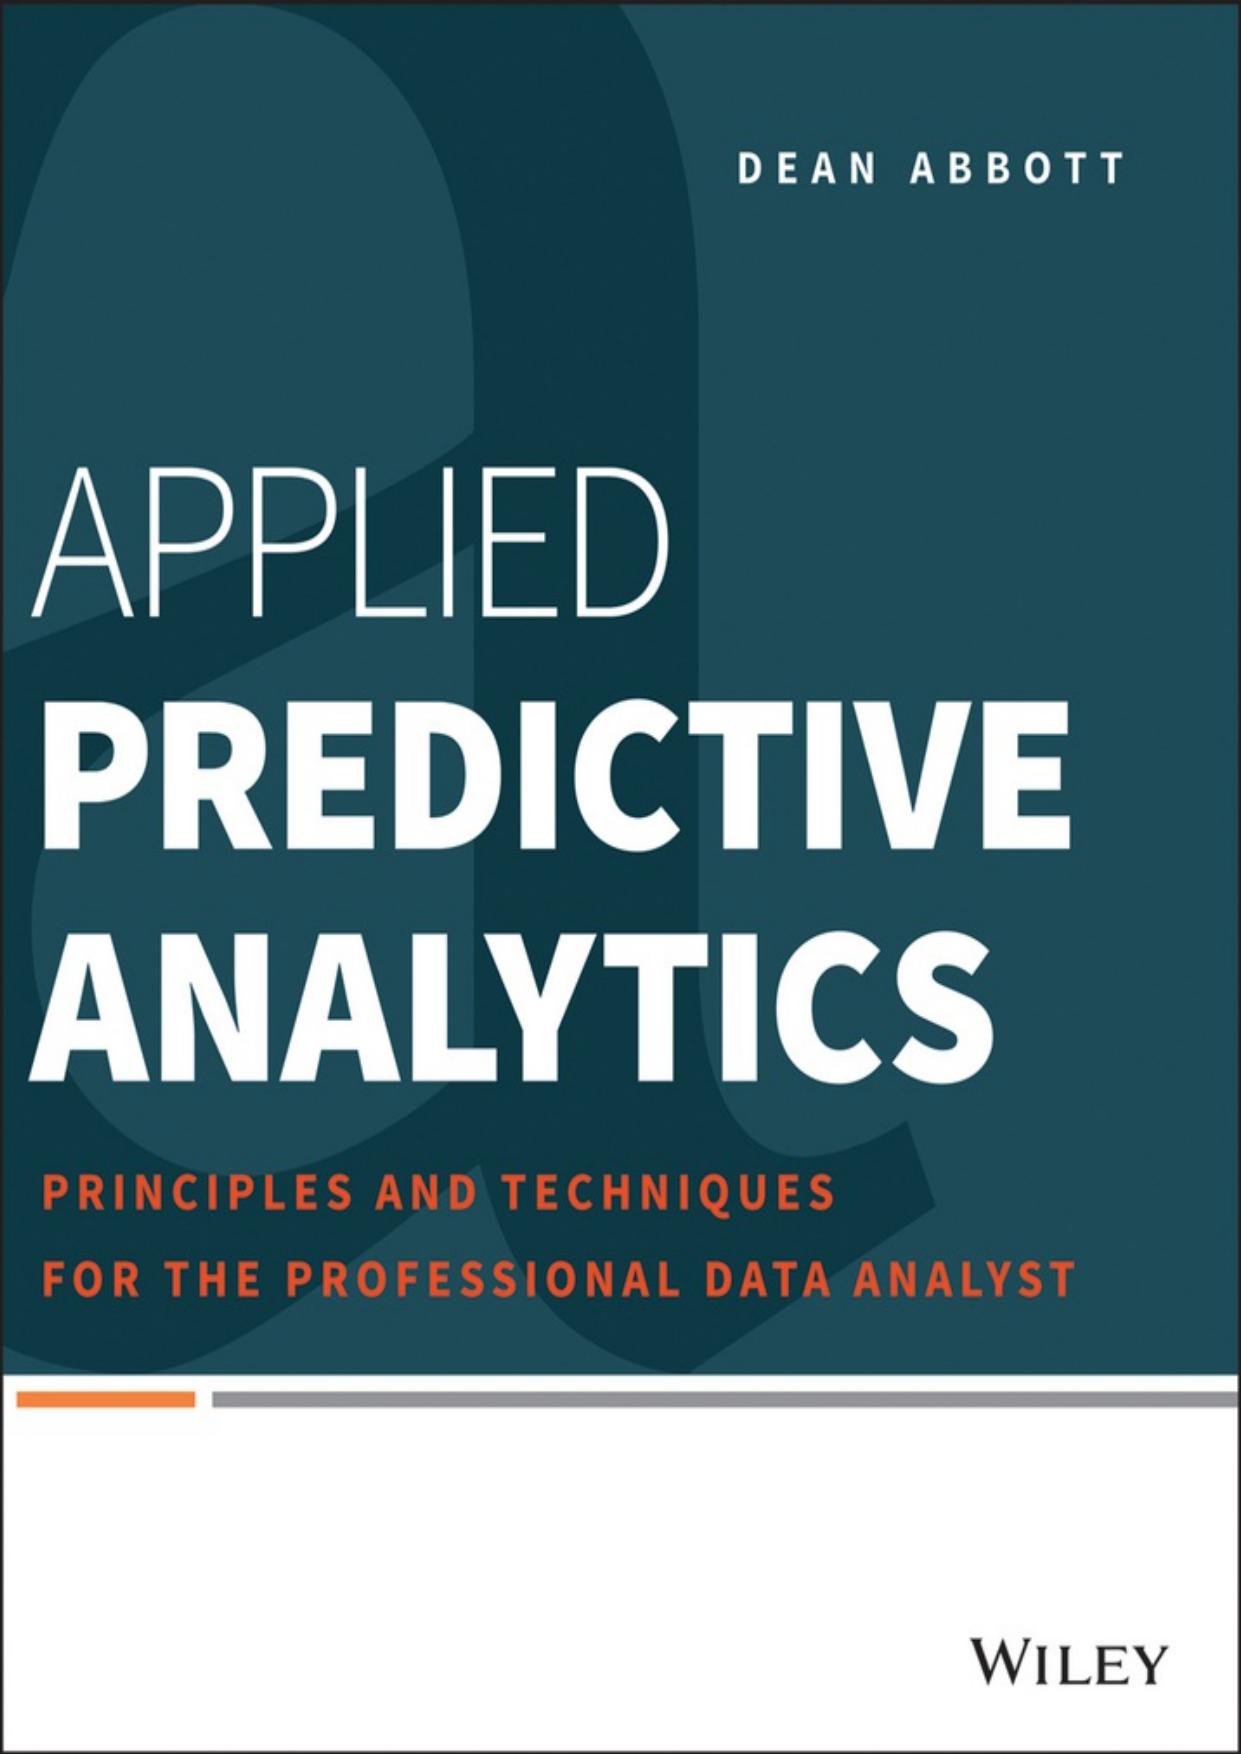 Applied Predictive Analytics by Dean Abbott